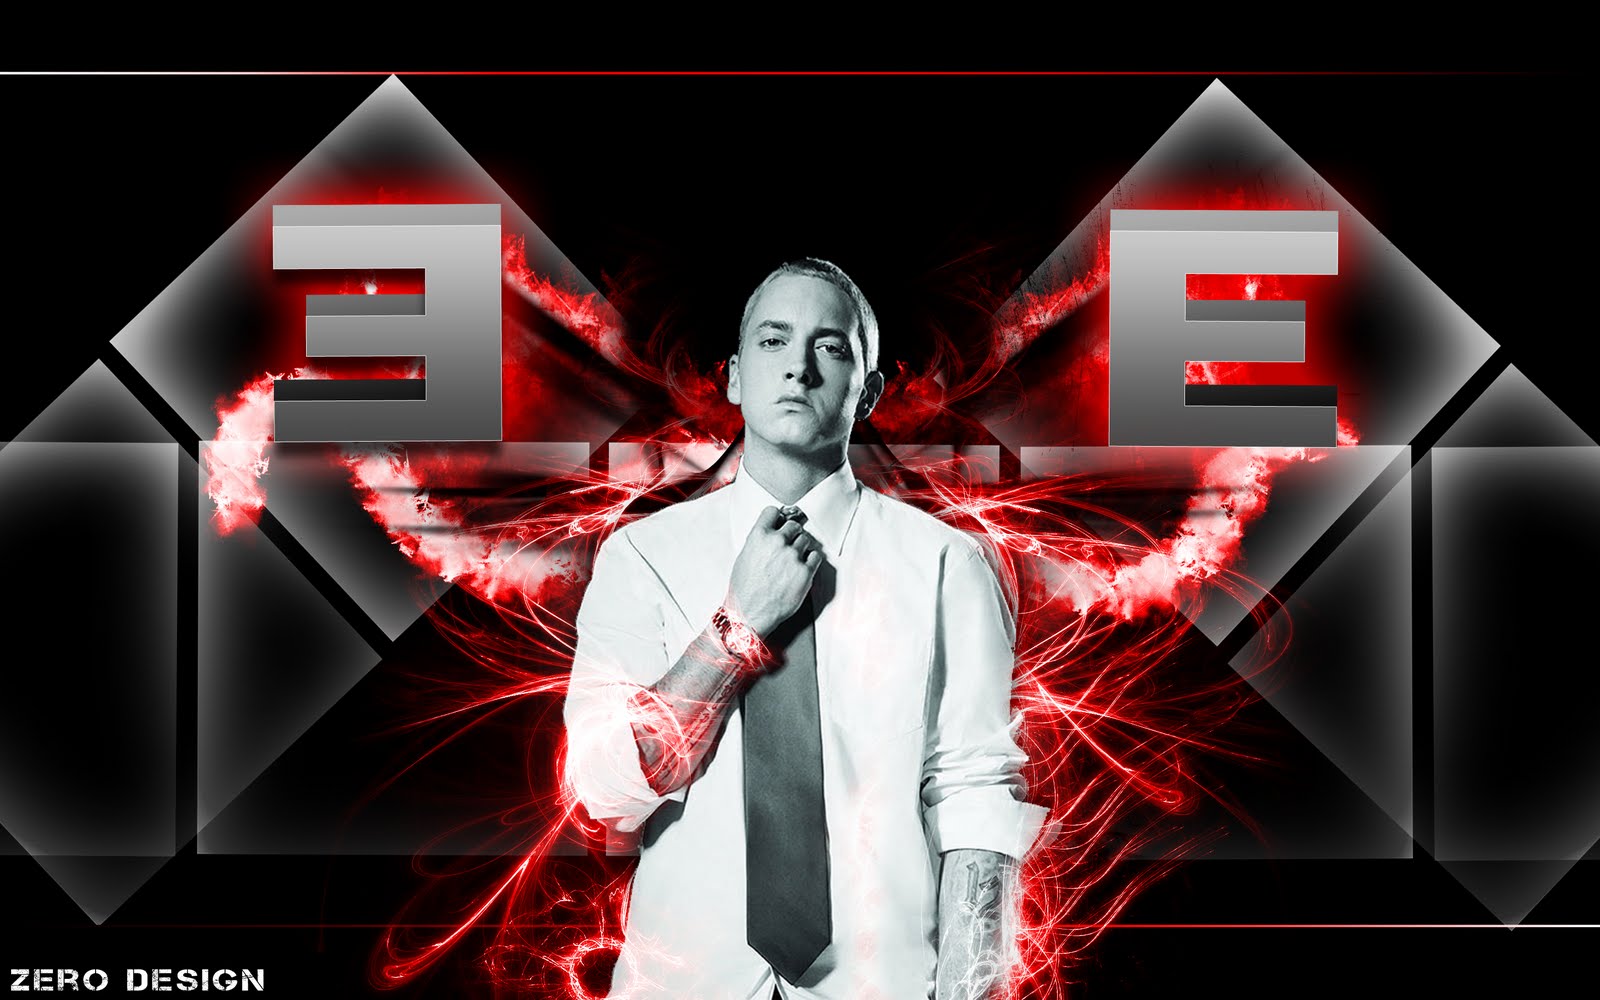 49+] Eminem Wallpaper Screensavers - WallpaperSafari